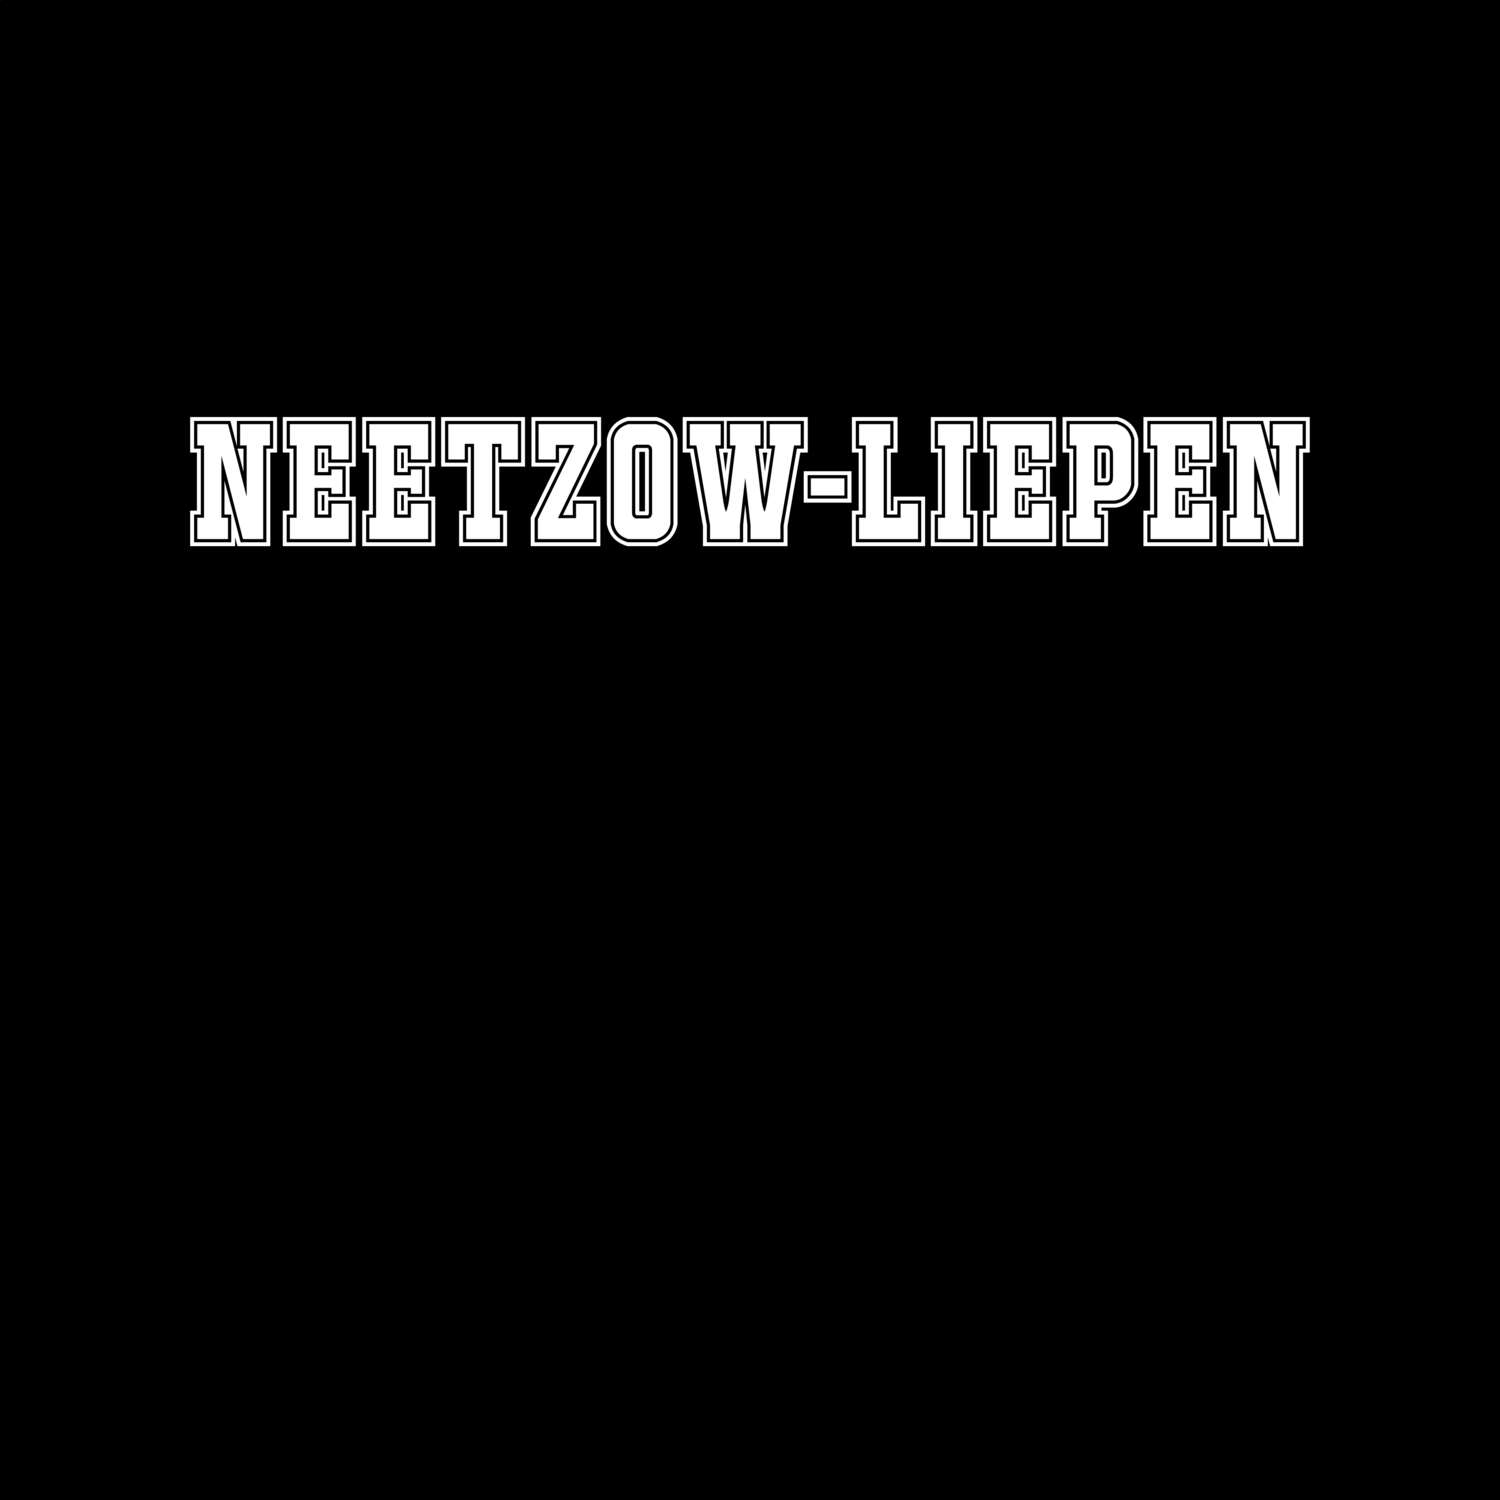 Neetzow-Liepen T-Shirt »Classic«